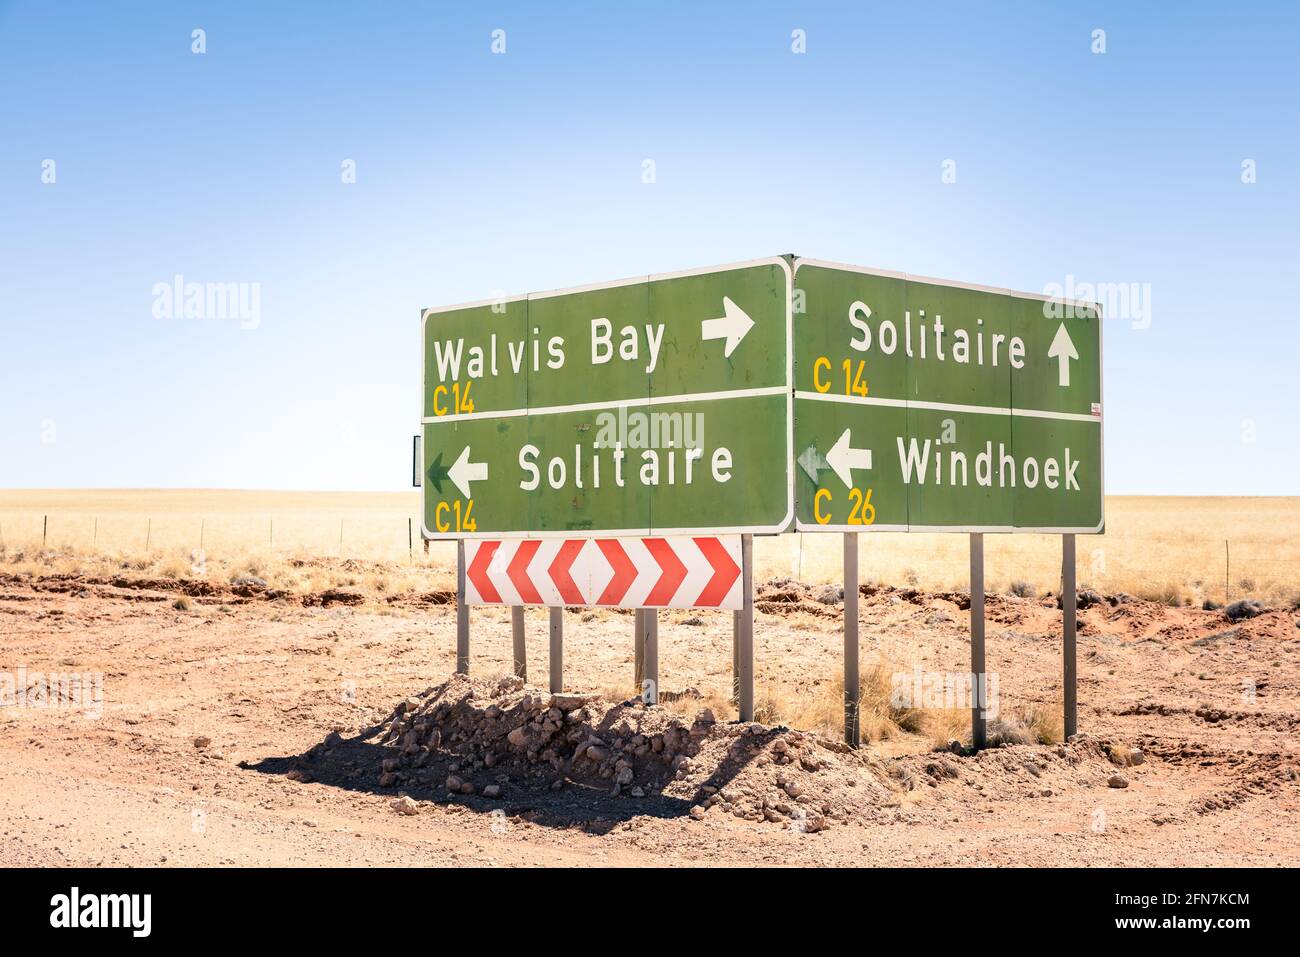 Señalización de múltiples carreteras en Namibia - Walvis Bay - Solitaire - Windhoek - Calles del desierto a destinos turísticos exclusivos Foto de stock